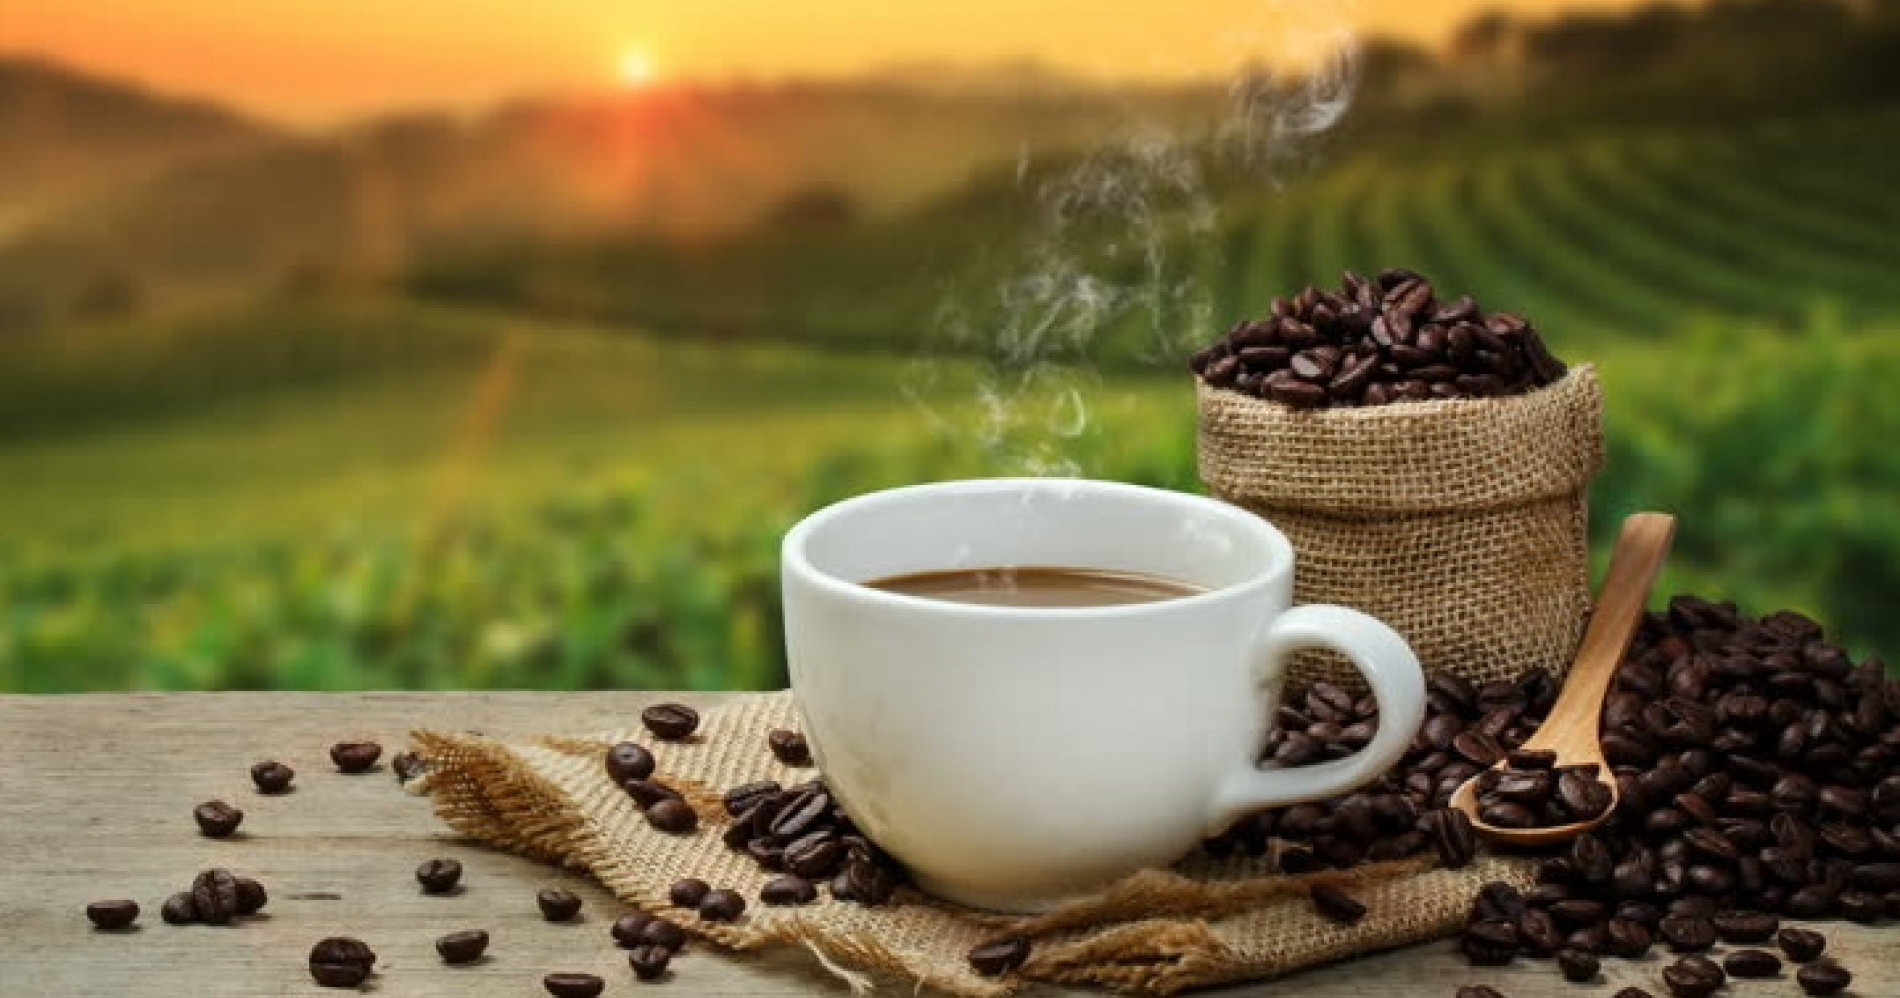 Manfaag kopi untuk kesehatan hati (Sumber gambar: lifestyle.okezone.com)